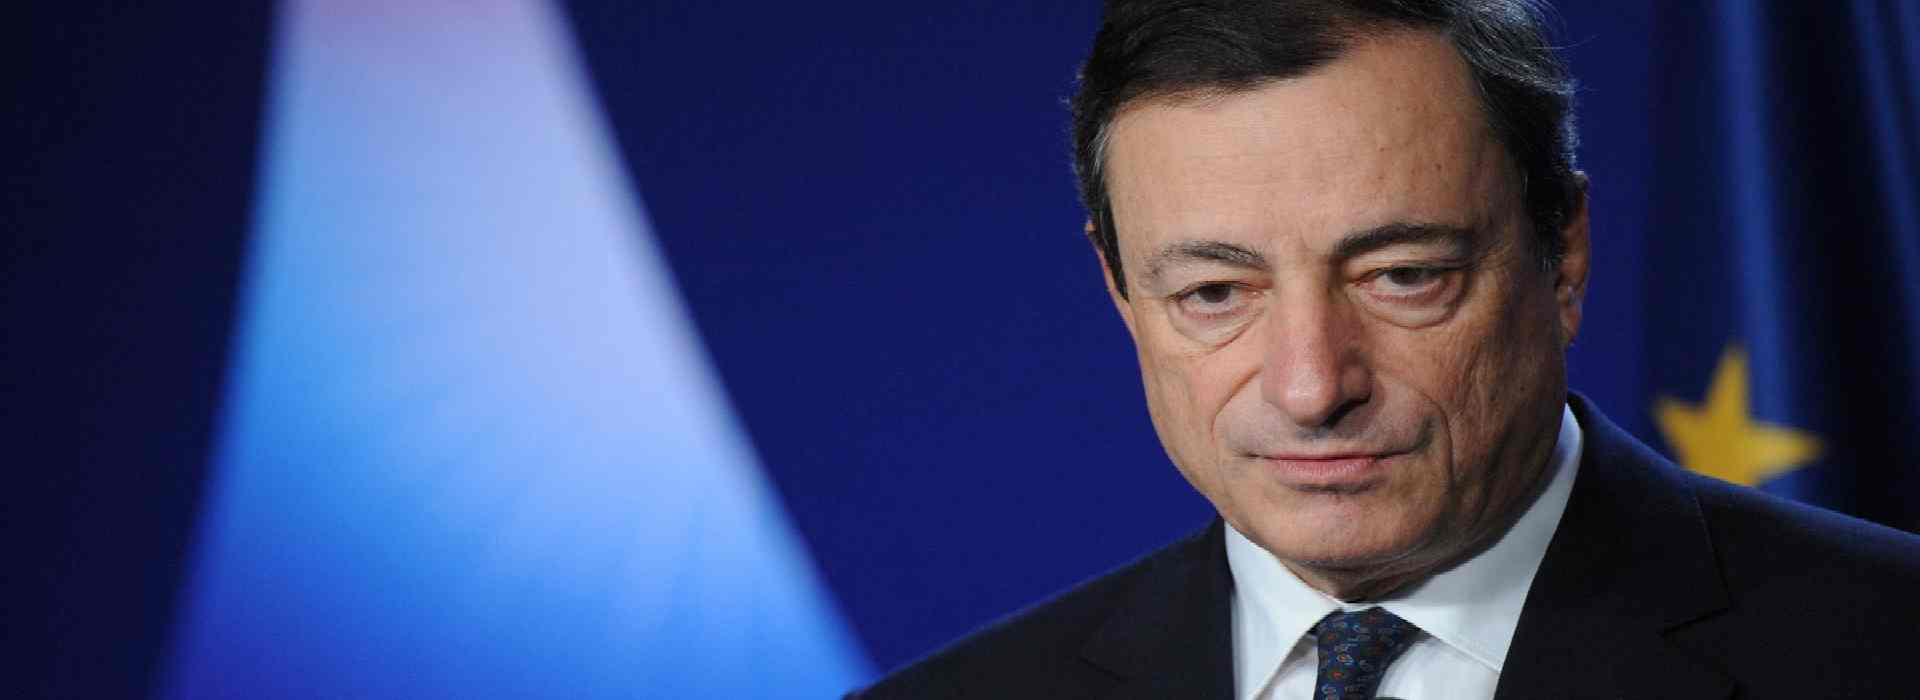 Governo Draghi: tutte le nuove poltrone. Cdp, Fs-Anas e i miliardi di soldi pubblici